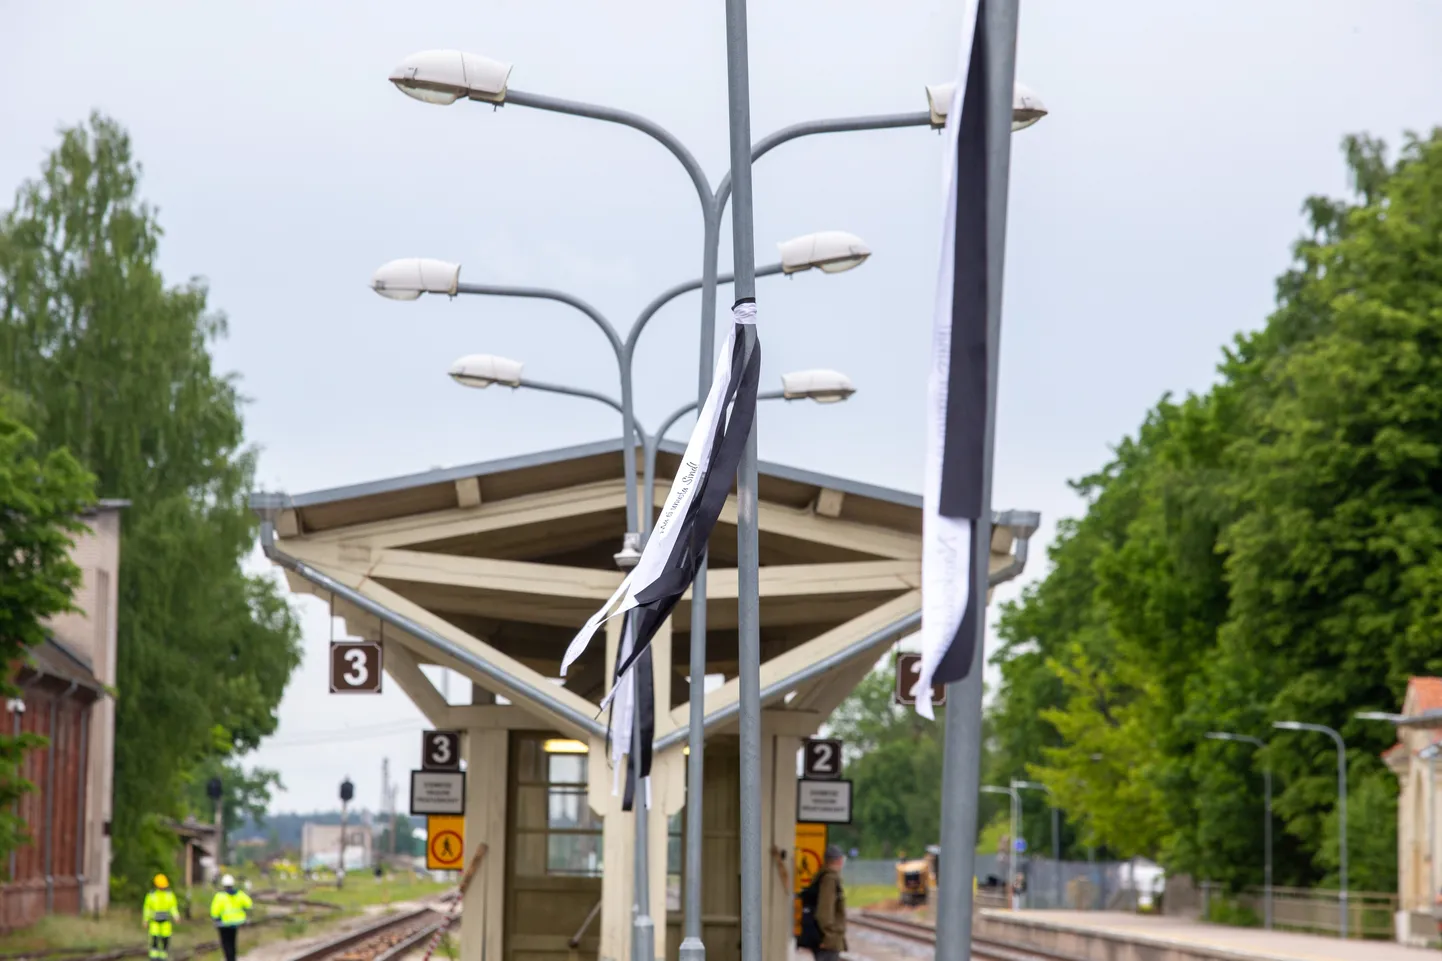 Naiskodukaitse liikmed panevad 14. juunil küüditamisohvrite mälestamiseks ooteplatvormidele leinalindid, nii nagu on seda tehtud ka viiel eelneval aastal. Sel pildil on  2022. aastal Tartu rongijaama sätitud lindid.